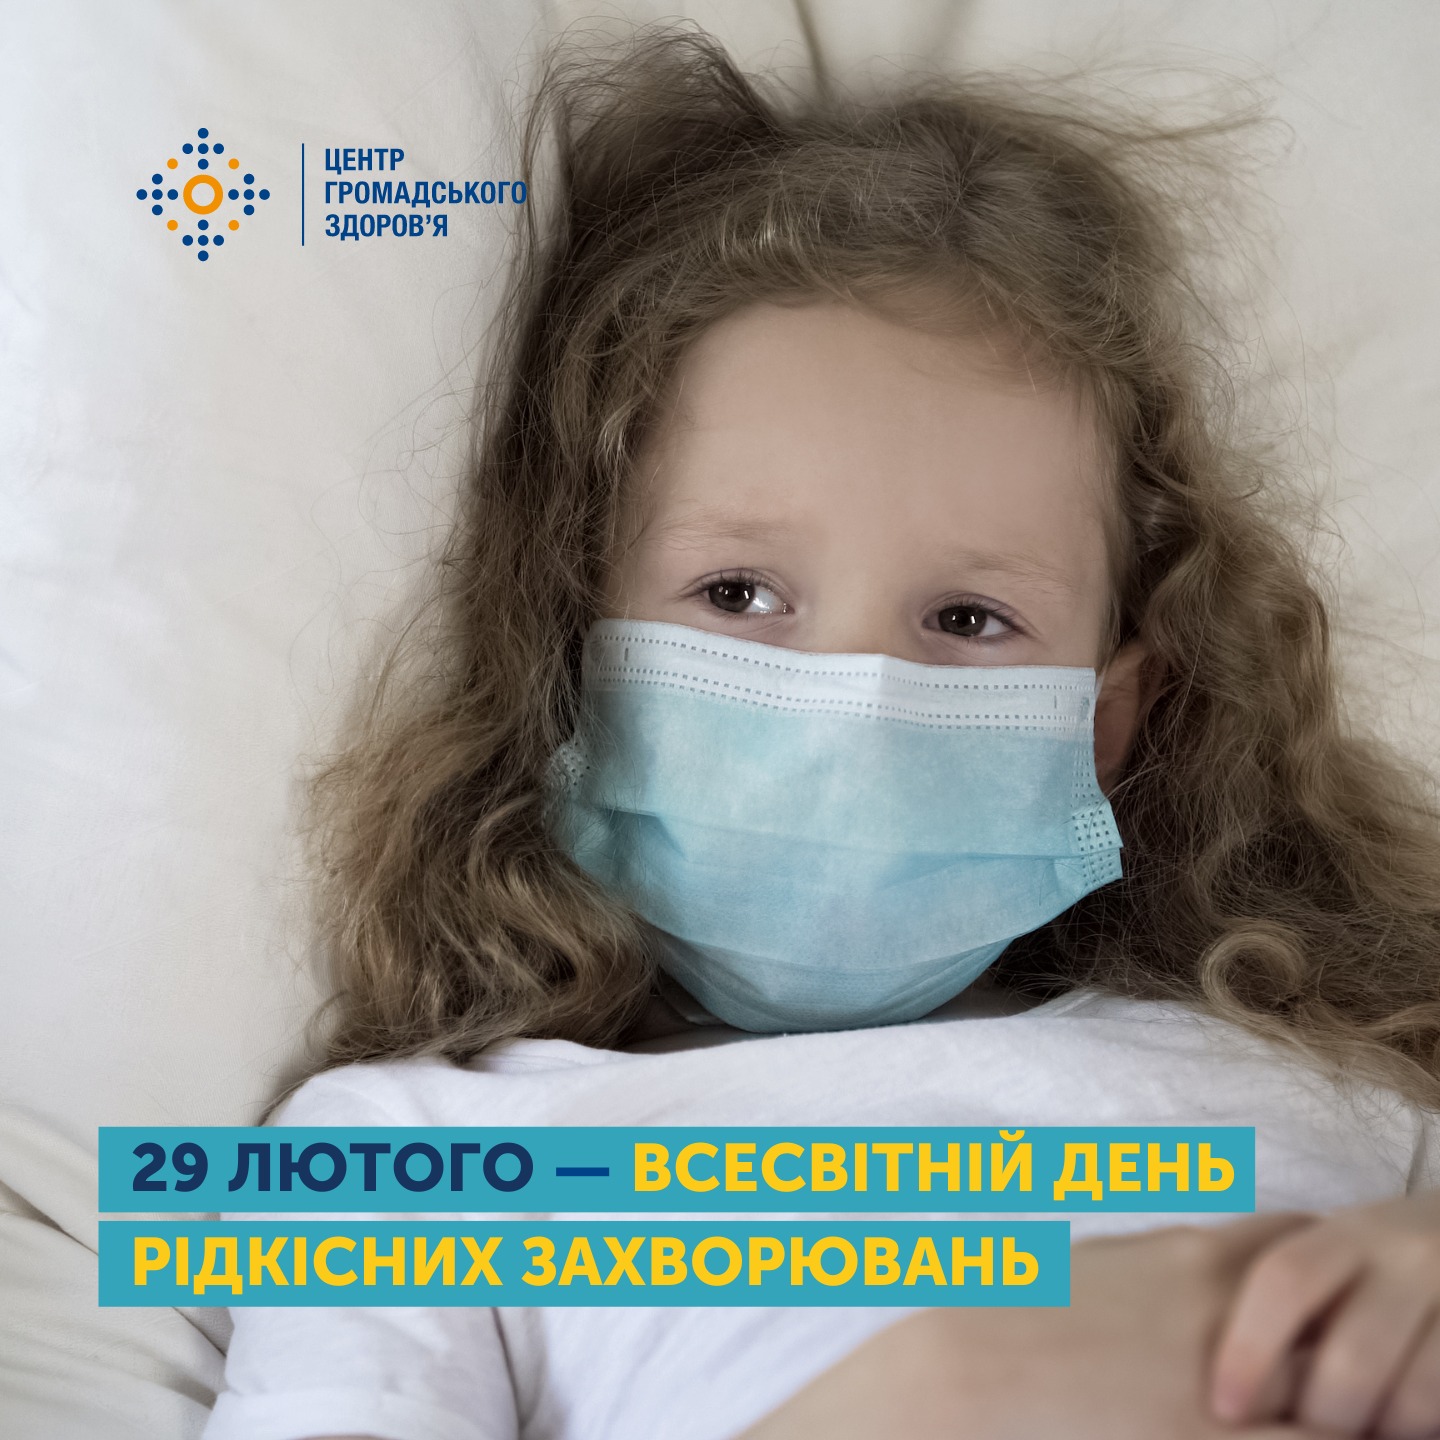 29 лютого — Всесвітній день рідкісних захворювань